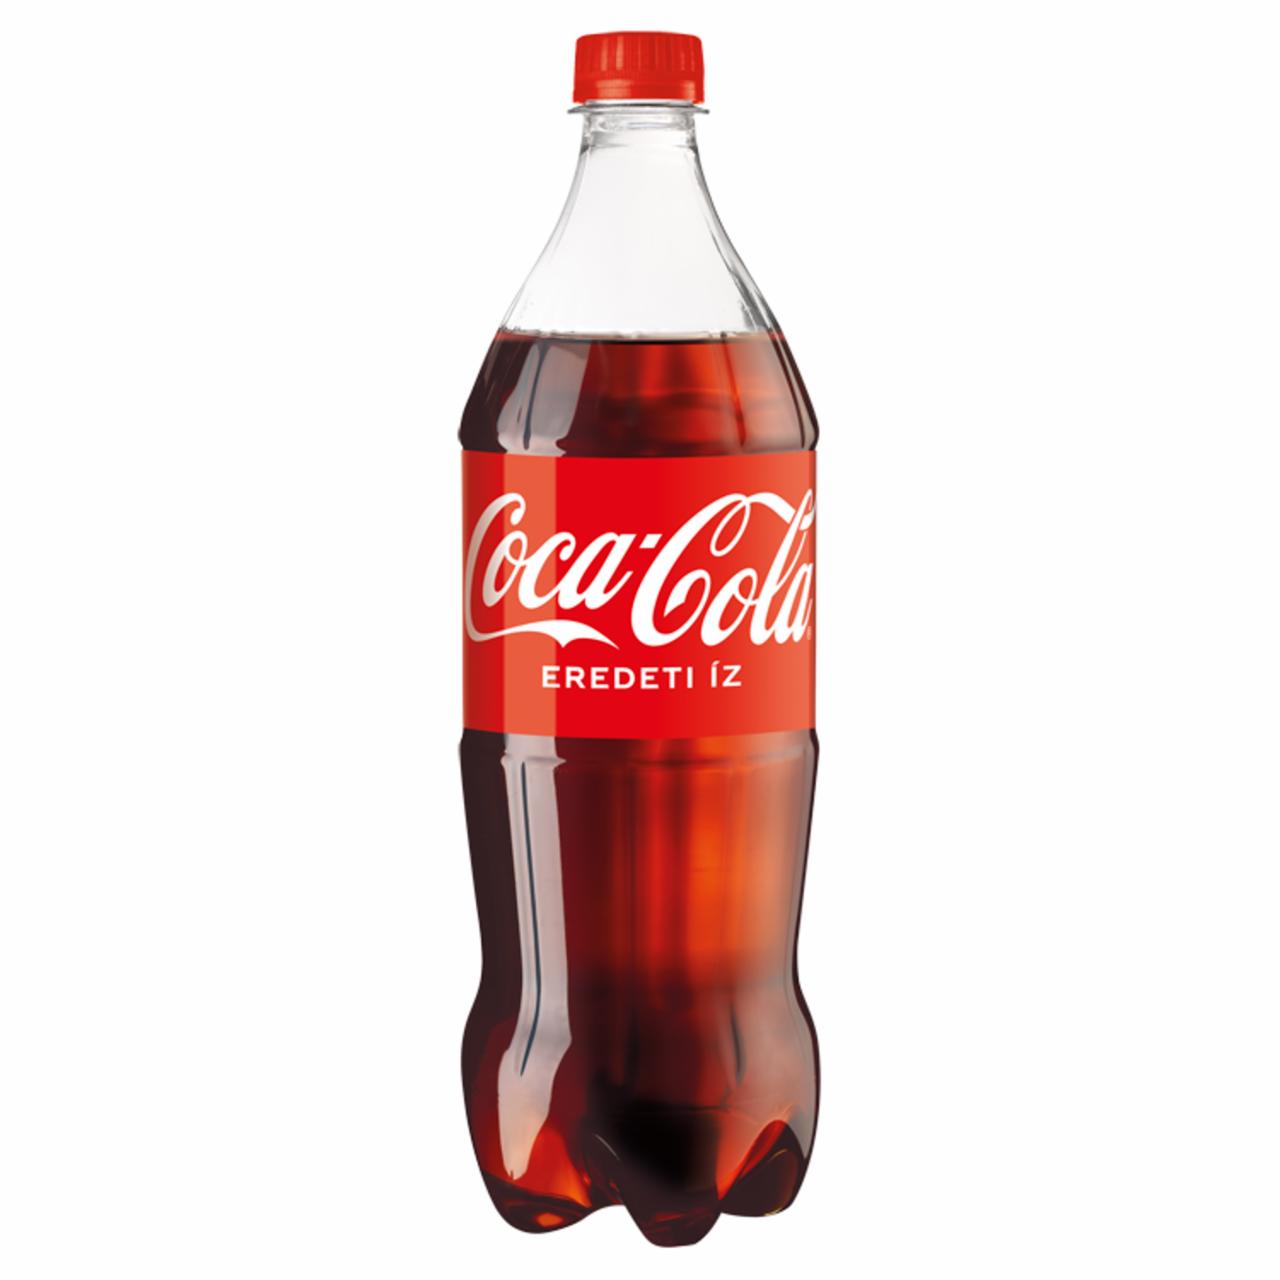 Képek - Coca-Cola colaízű szénsavas üdítőital 1 l